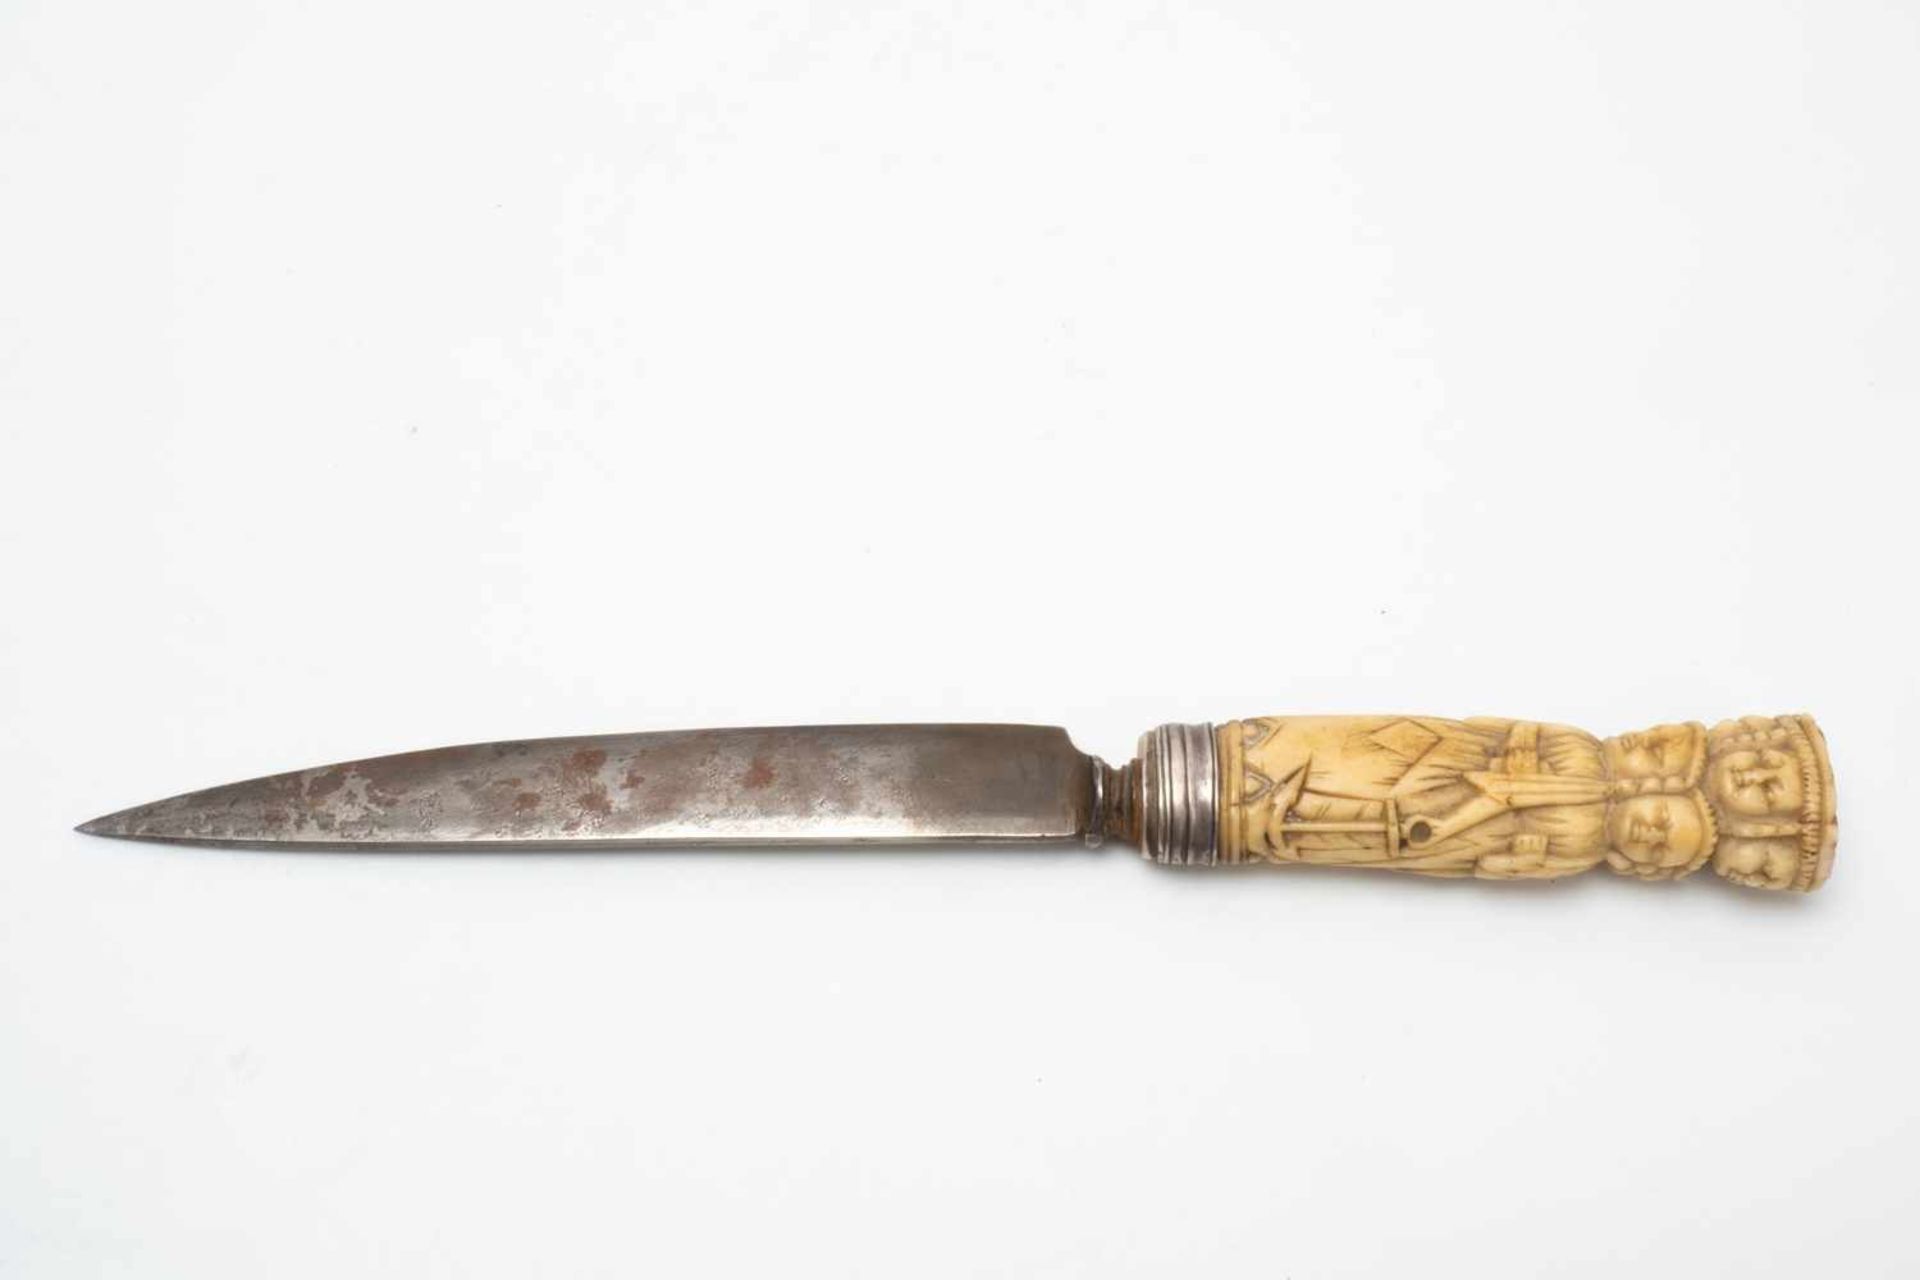 Asian ornate dagger - Image 2 of 5